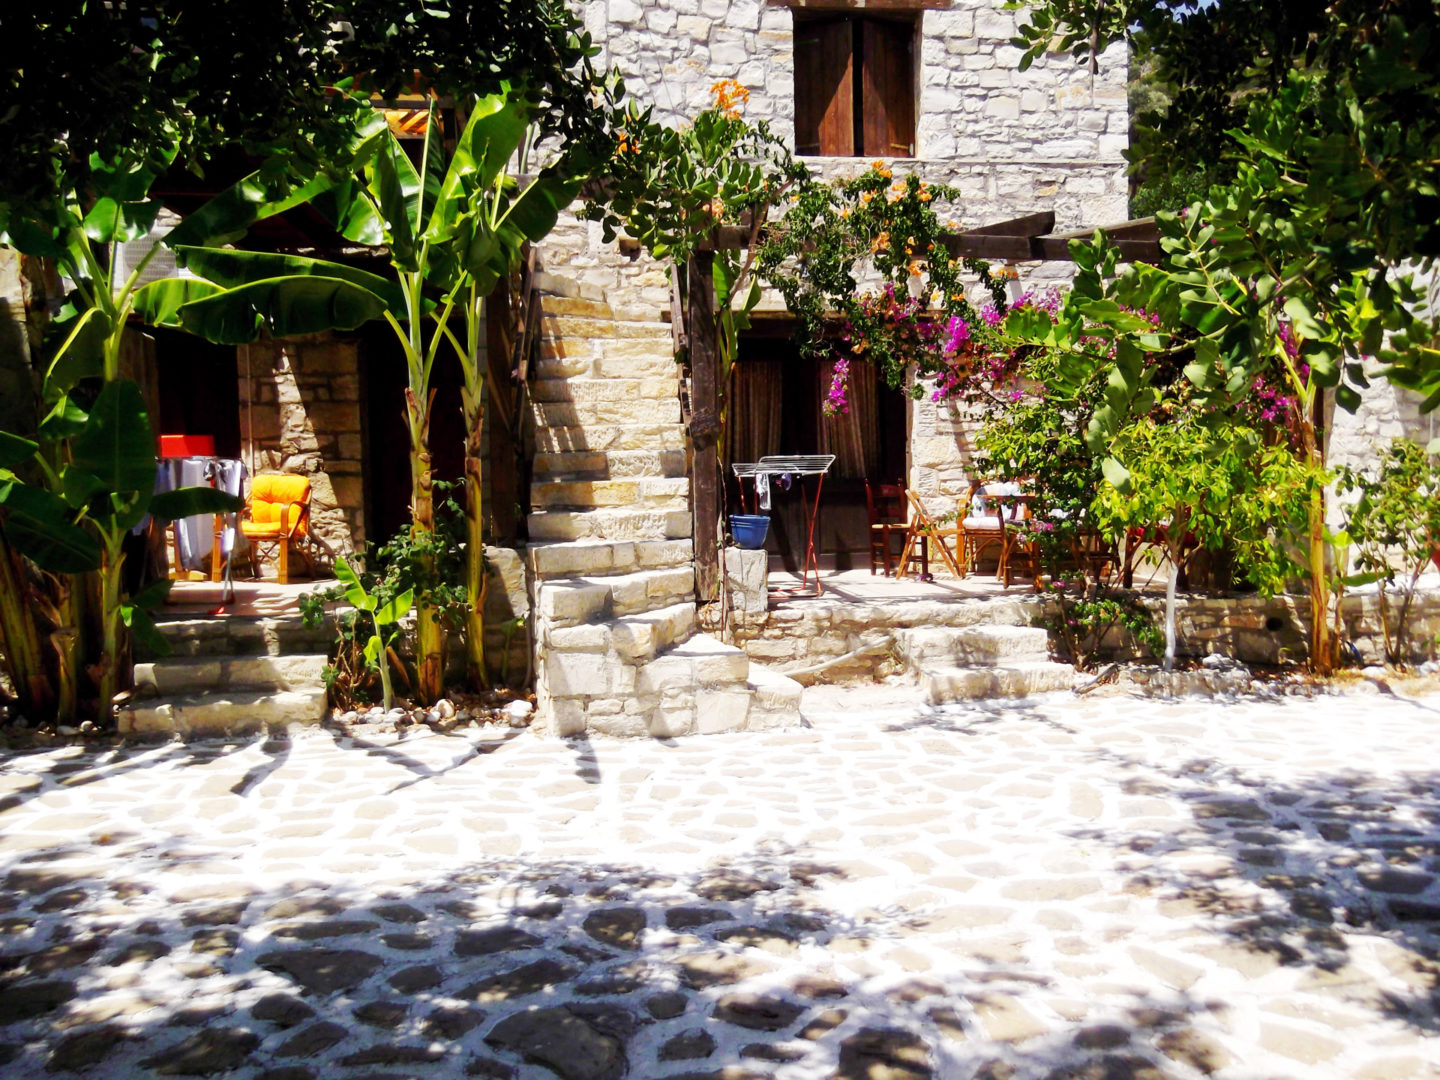 Hotel in Bali Crete - Stone Village - Village 7